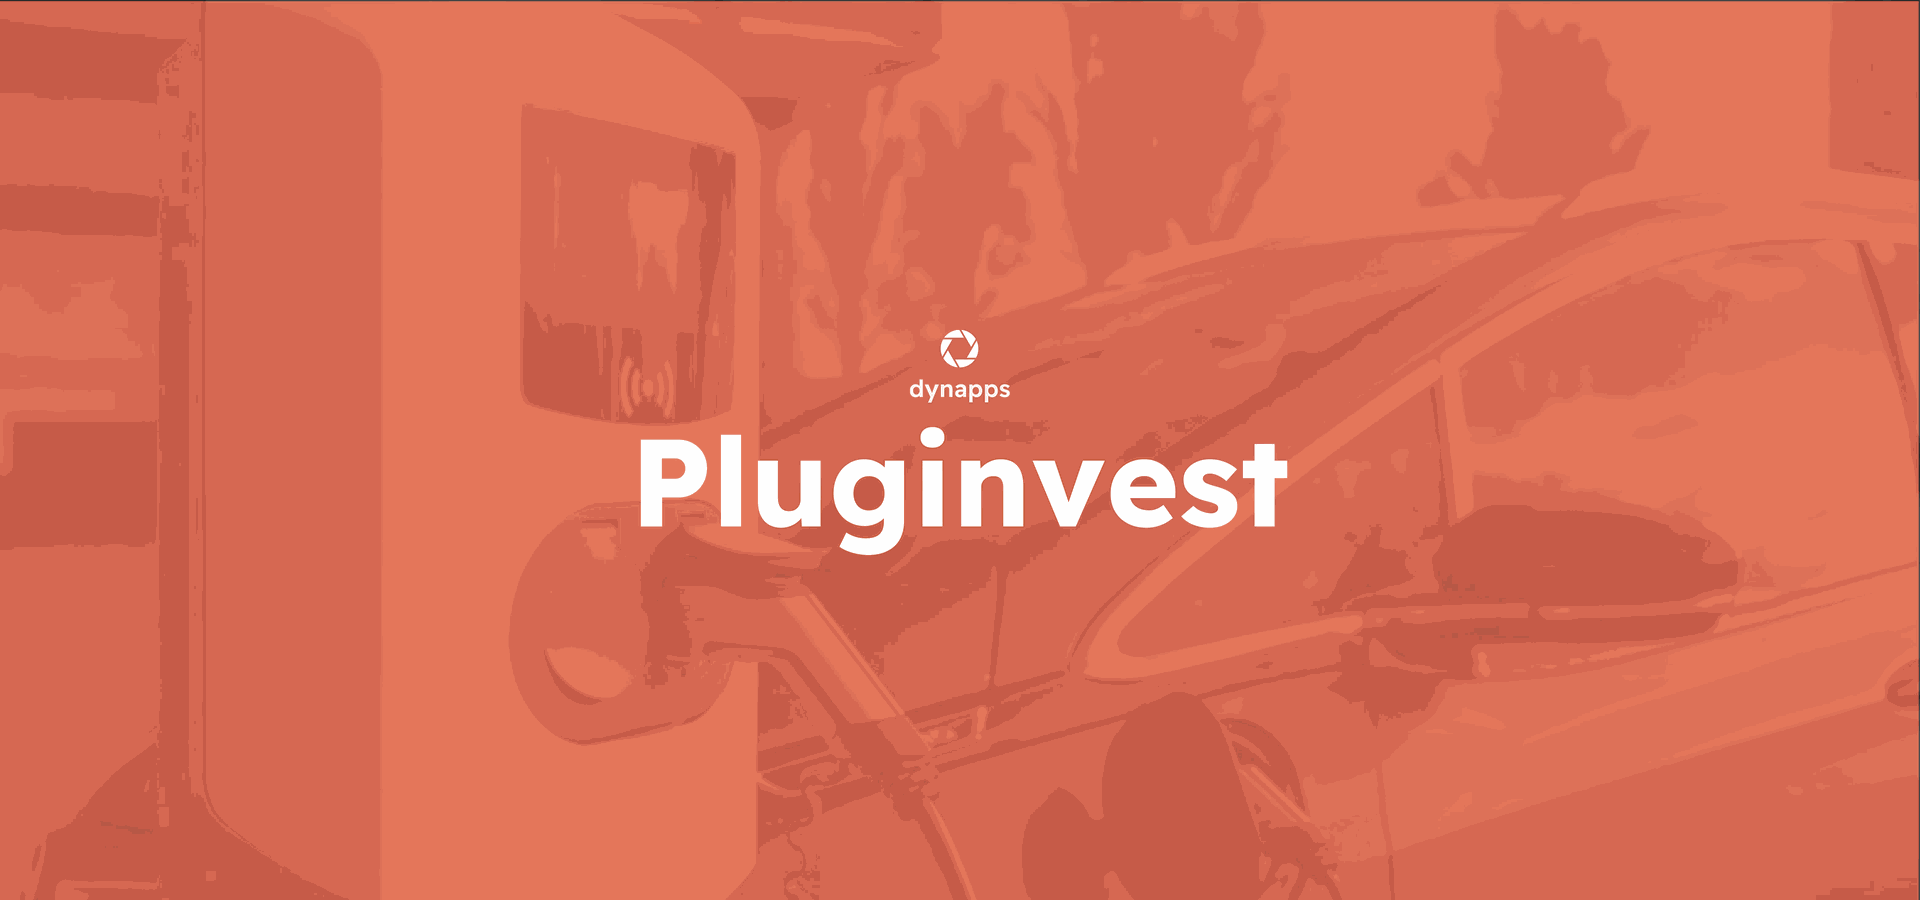 Pluginvest kiest voor een volledig geïntegreerde website in Odoo